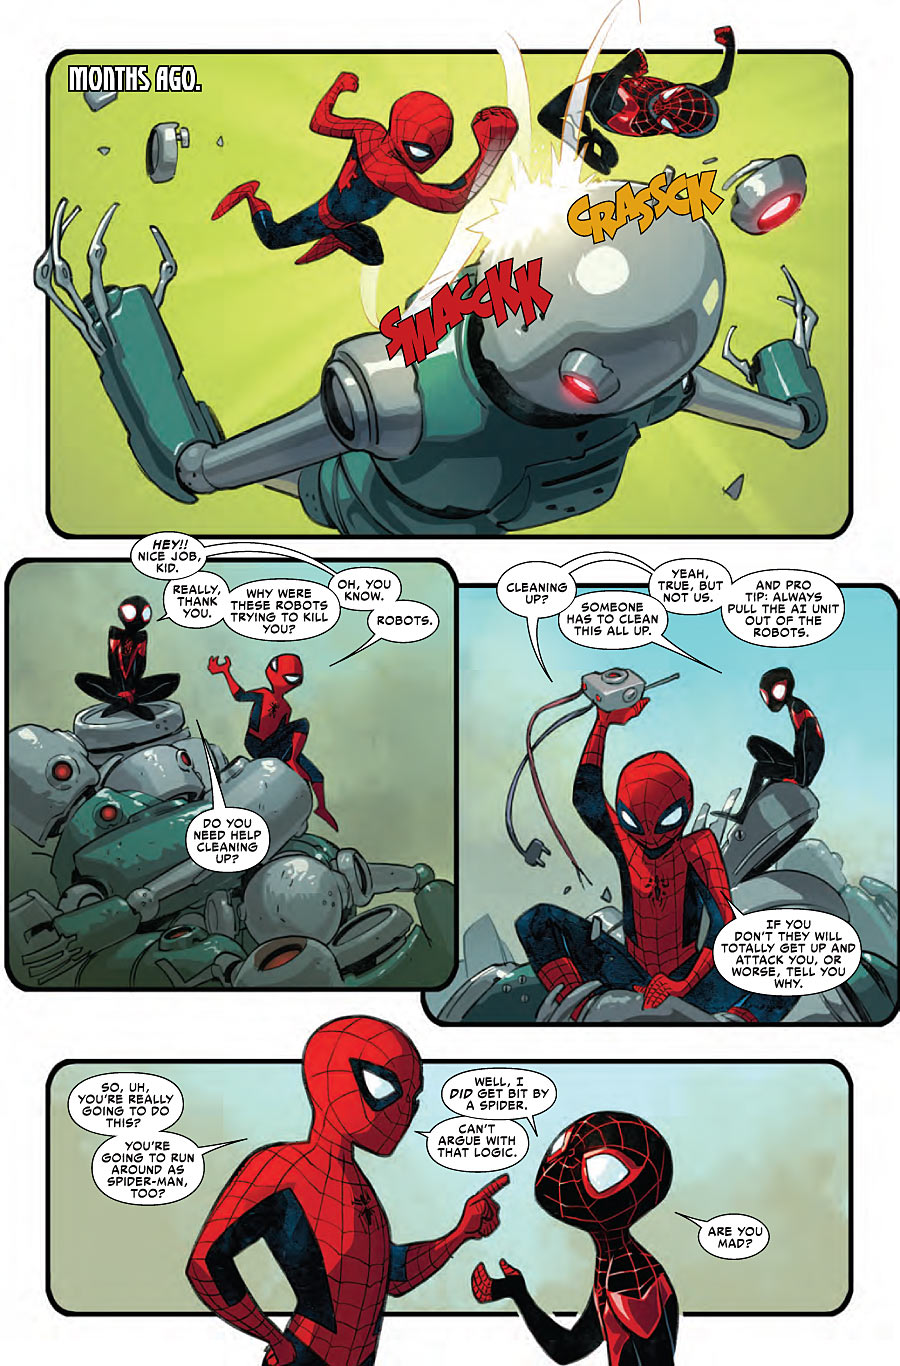 Spider-Man fighting